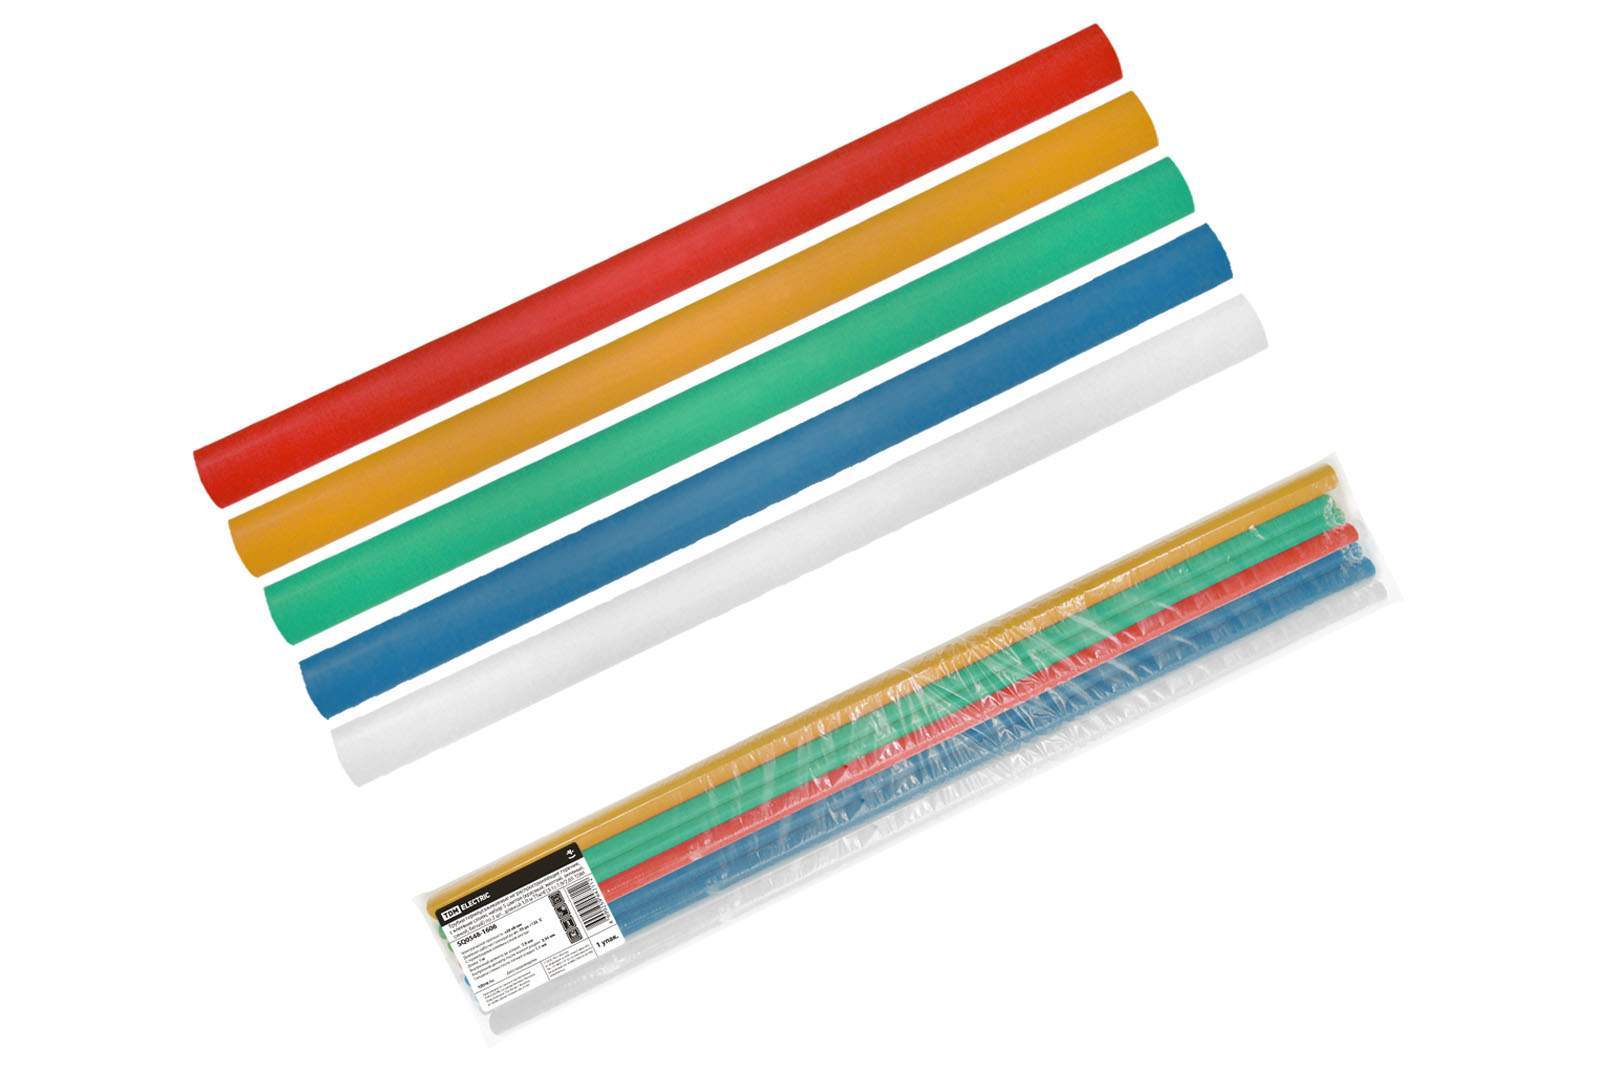 трубки термоусаживаемые, клеевые, набор 5 цветов по 2 шт. тткнг(3:1)-7,9/2,65 tdm от BTSprom.by